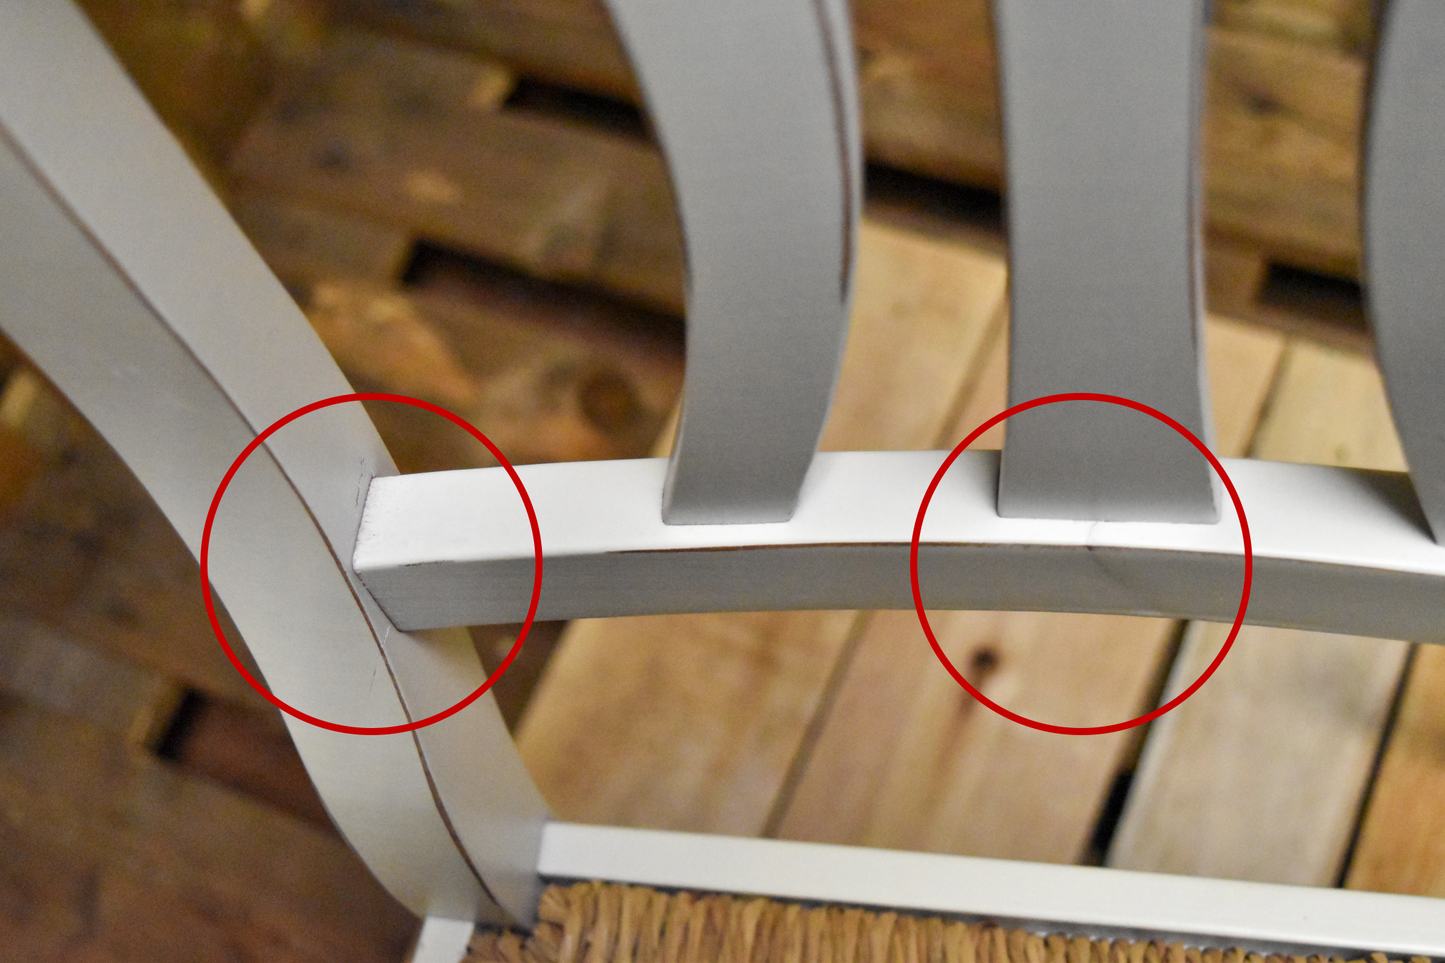 Stock sedie outlet modello 16/11 colore bianco anticato seduta in paglia